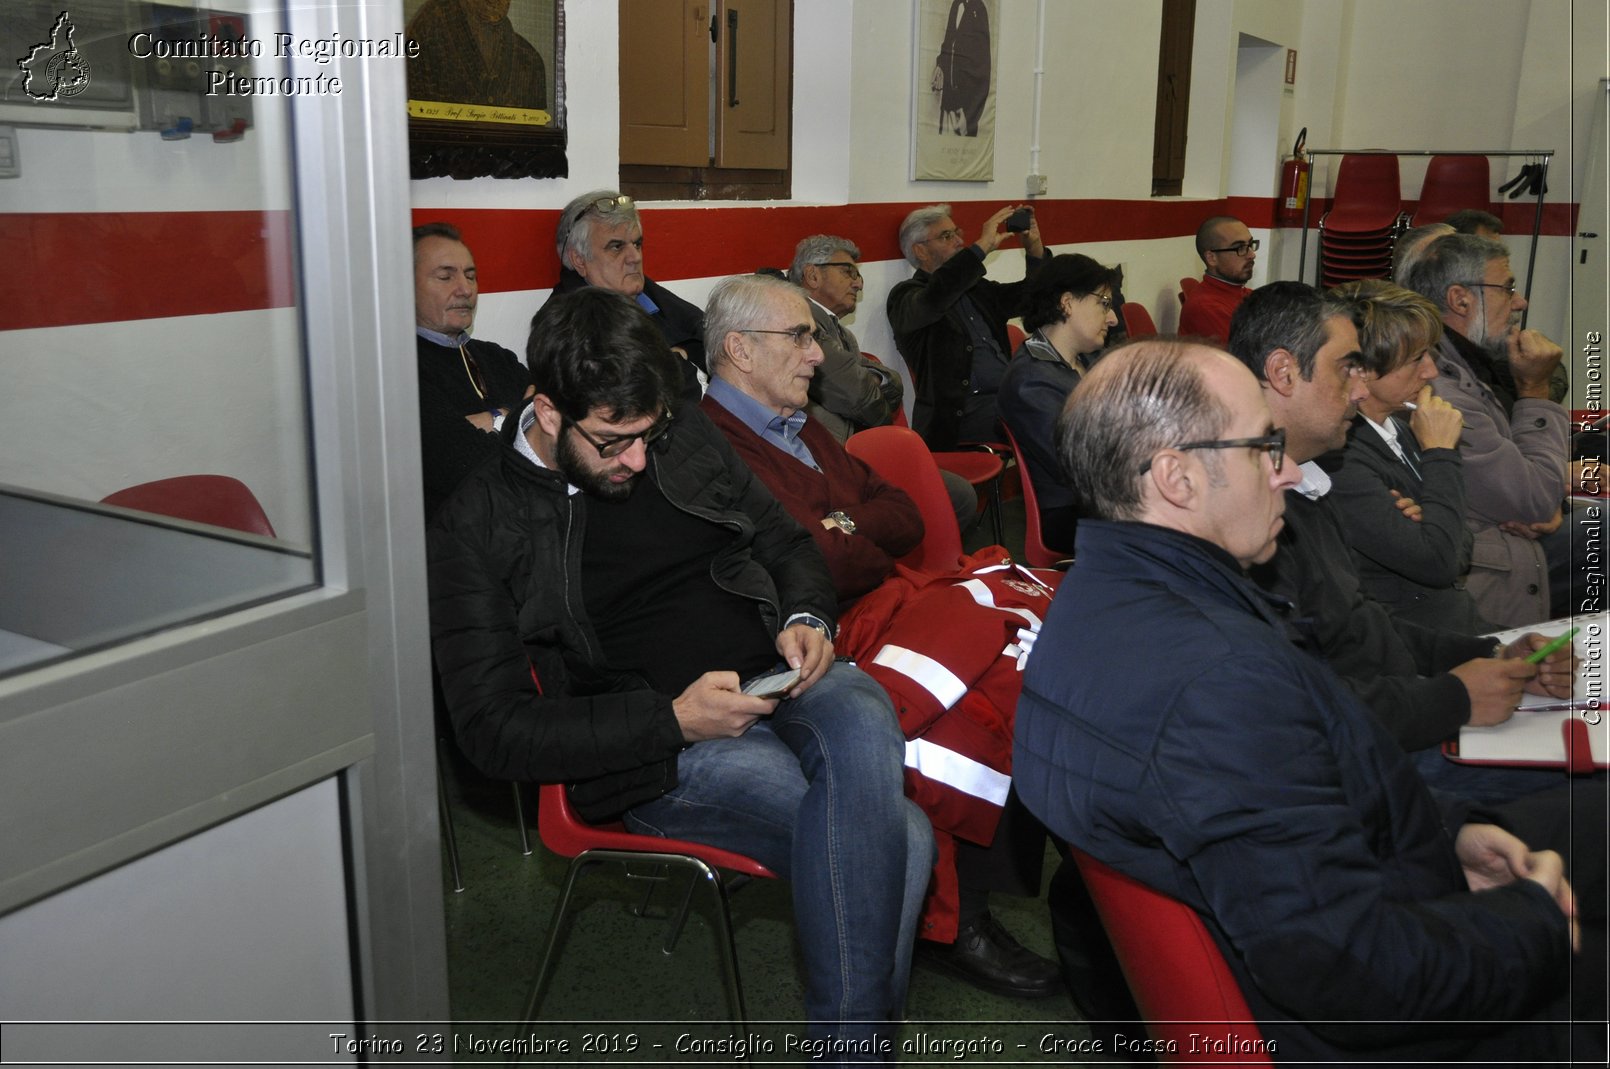 Torino 23 Novembre 2019 - Consiglio Regionale allargato - Croce Rossa Italiana